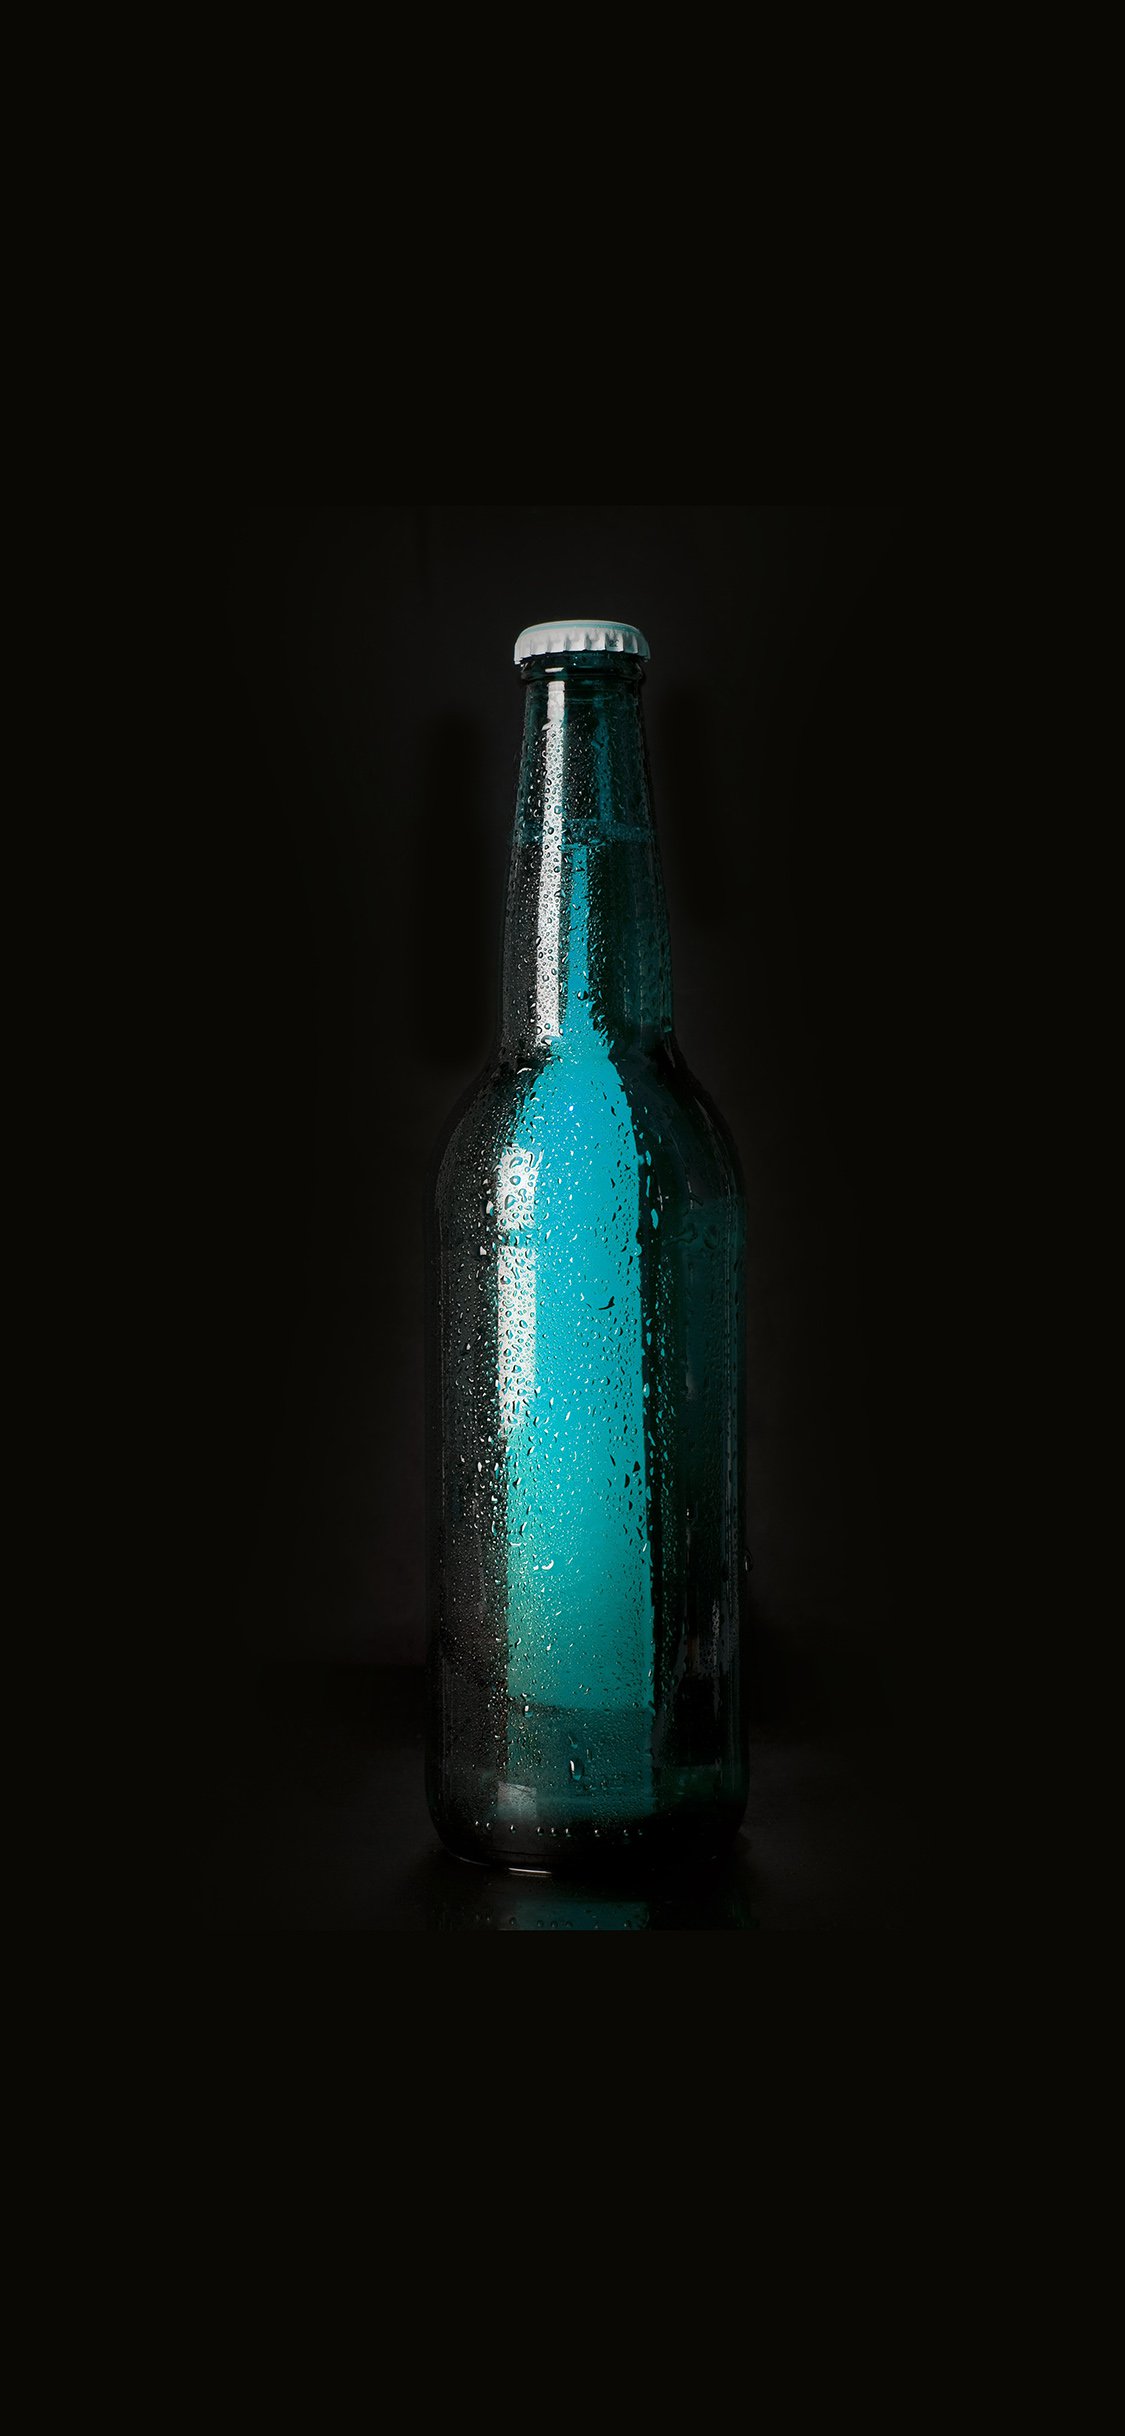 Beer bottles art iPhone X Wallpapers Free Download